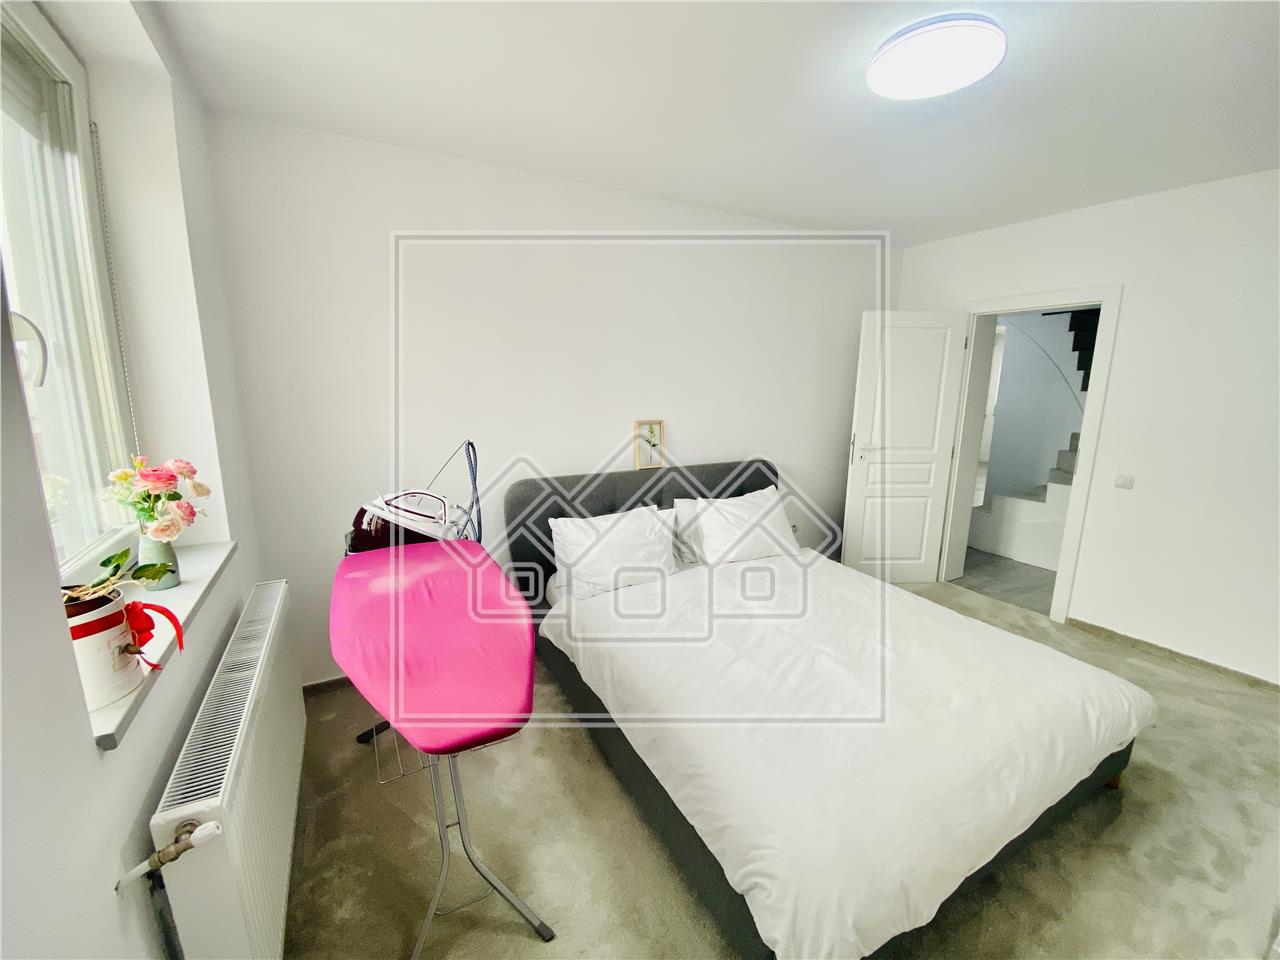 Wohnung zu verkaufen in Sibiu - 120 qm Nutzfl?che - Modern m?bliert -